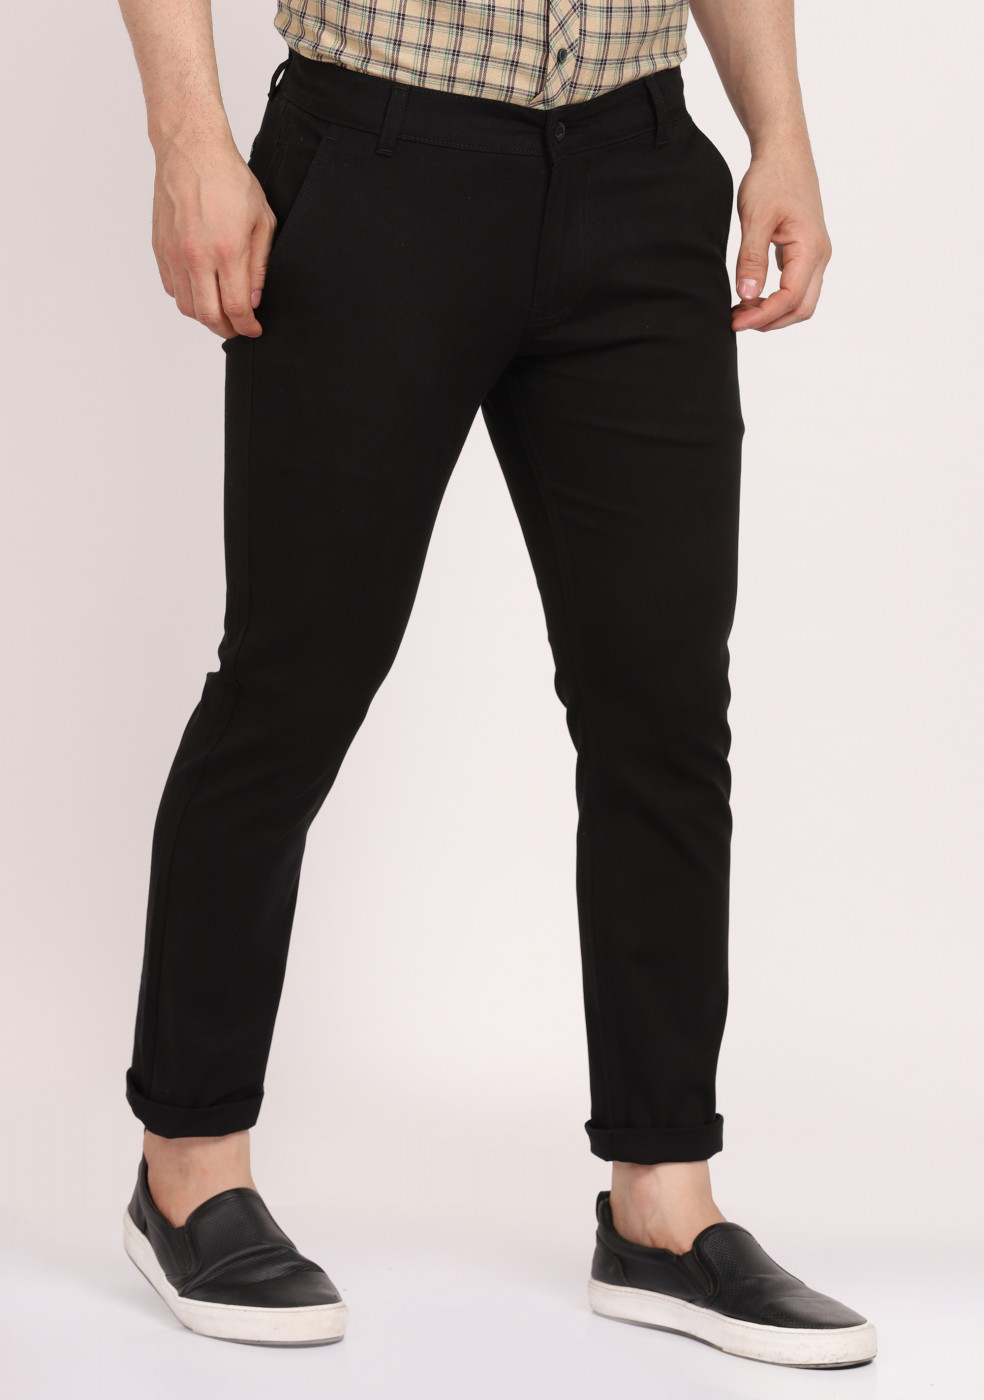 ASHTOM Black Formal Cotton Trouser Regular Fit For Men